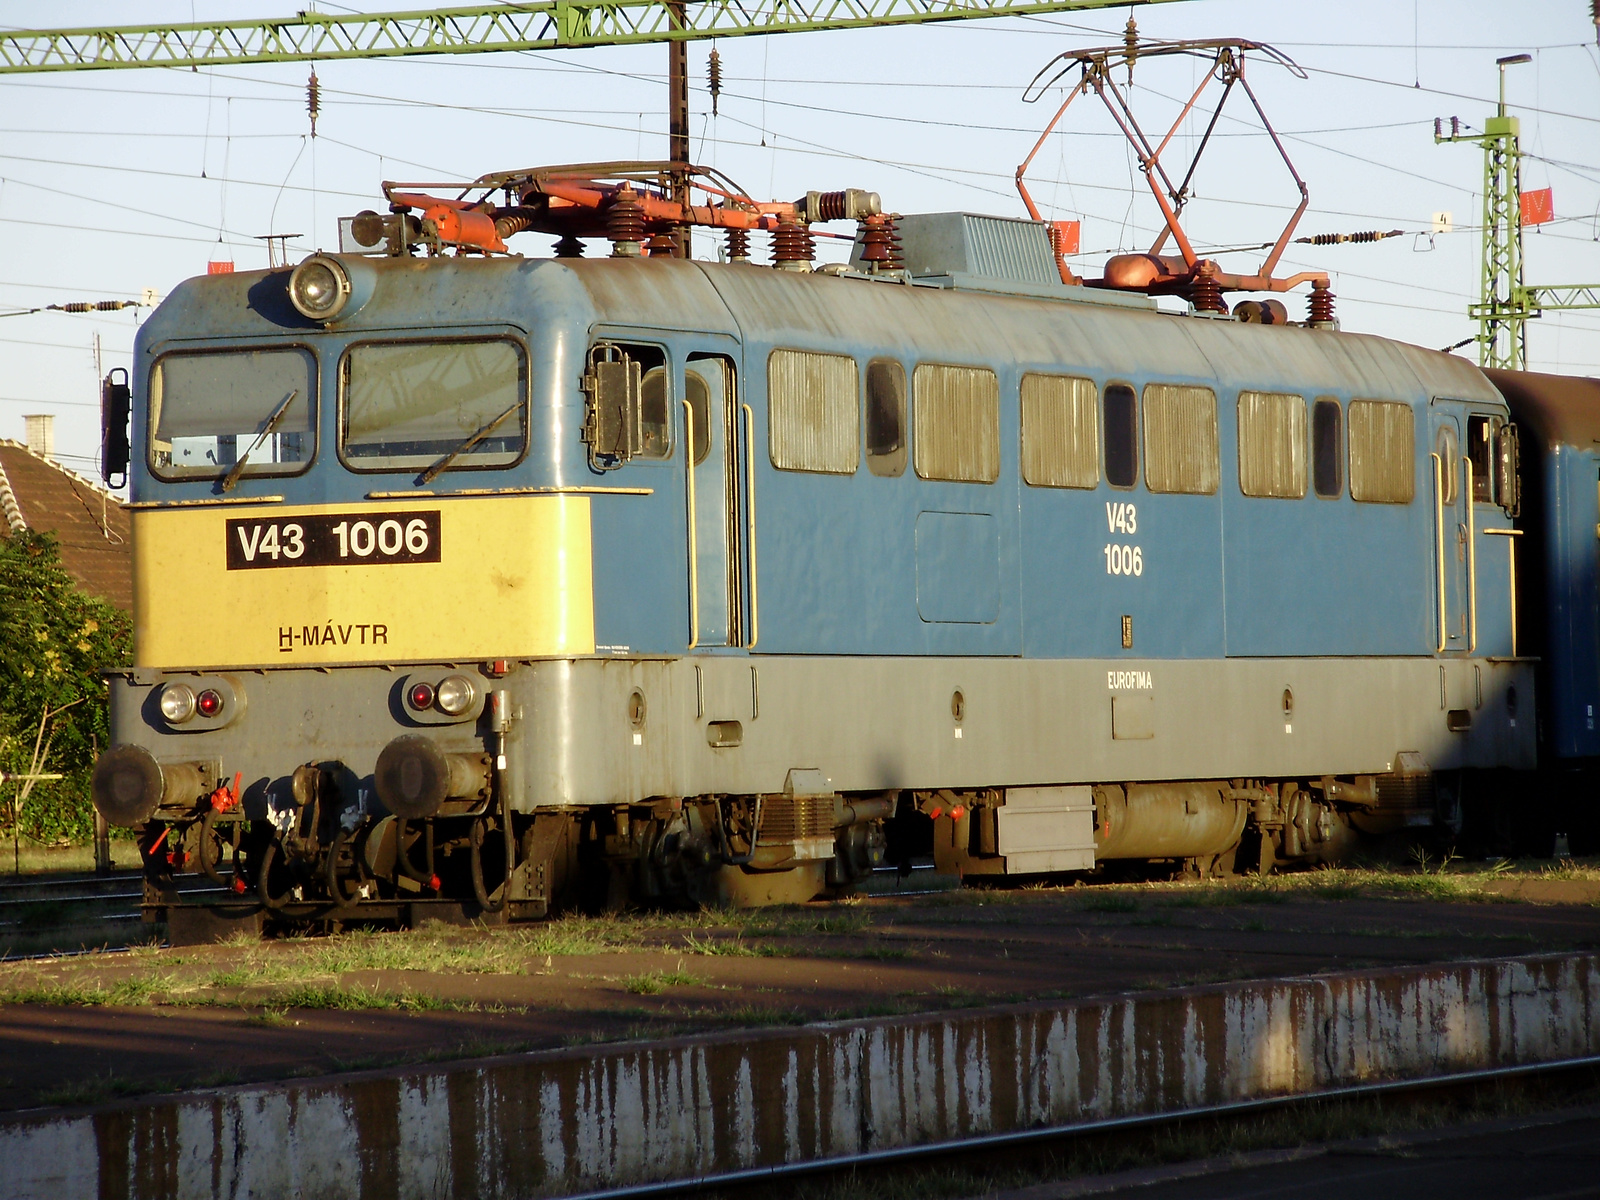 V43-1006